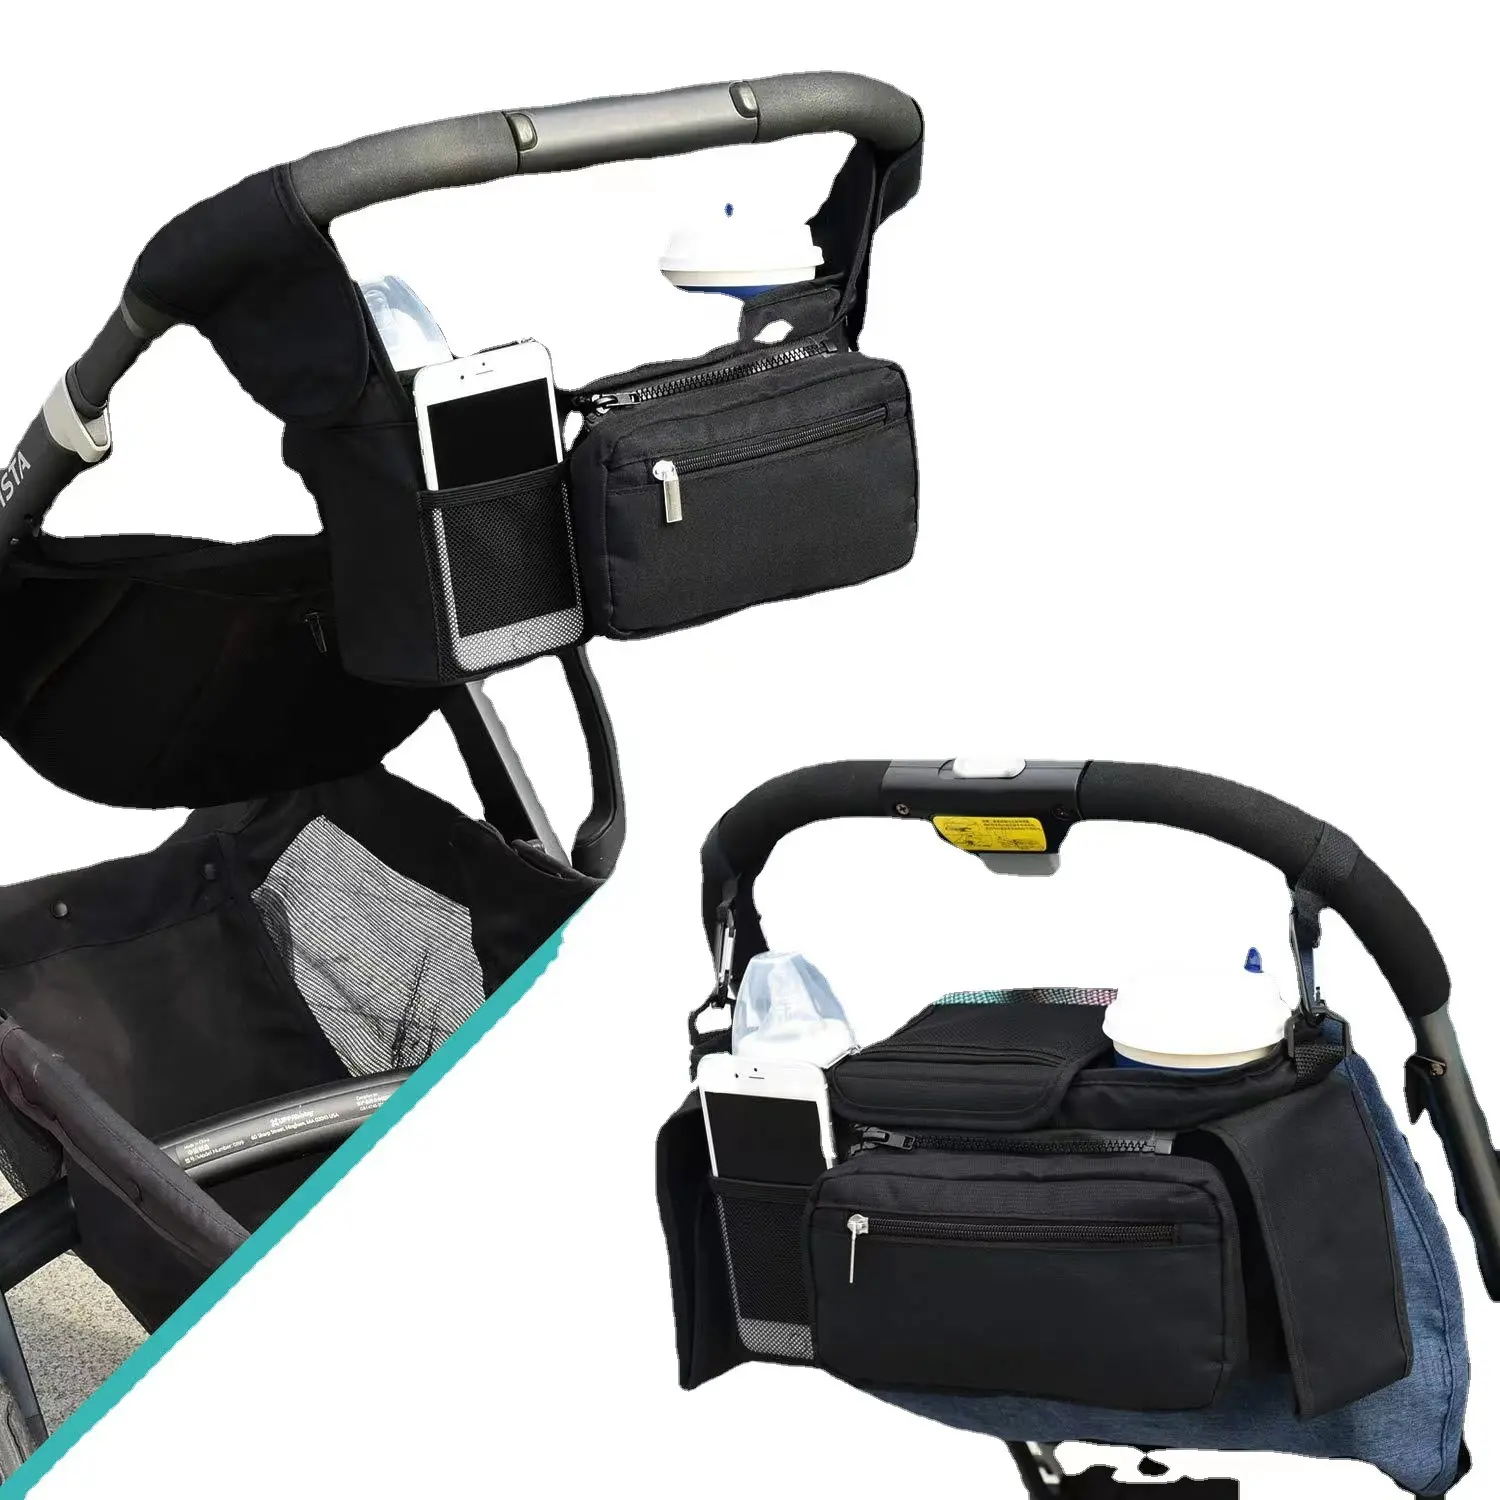 Evrensel özel bebek Caddy bezi organizatör çantası yalıtımlı fincan tutucular arabası